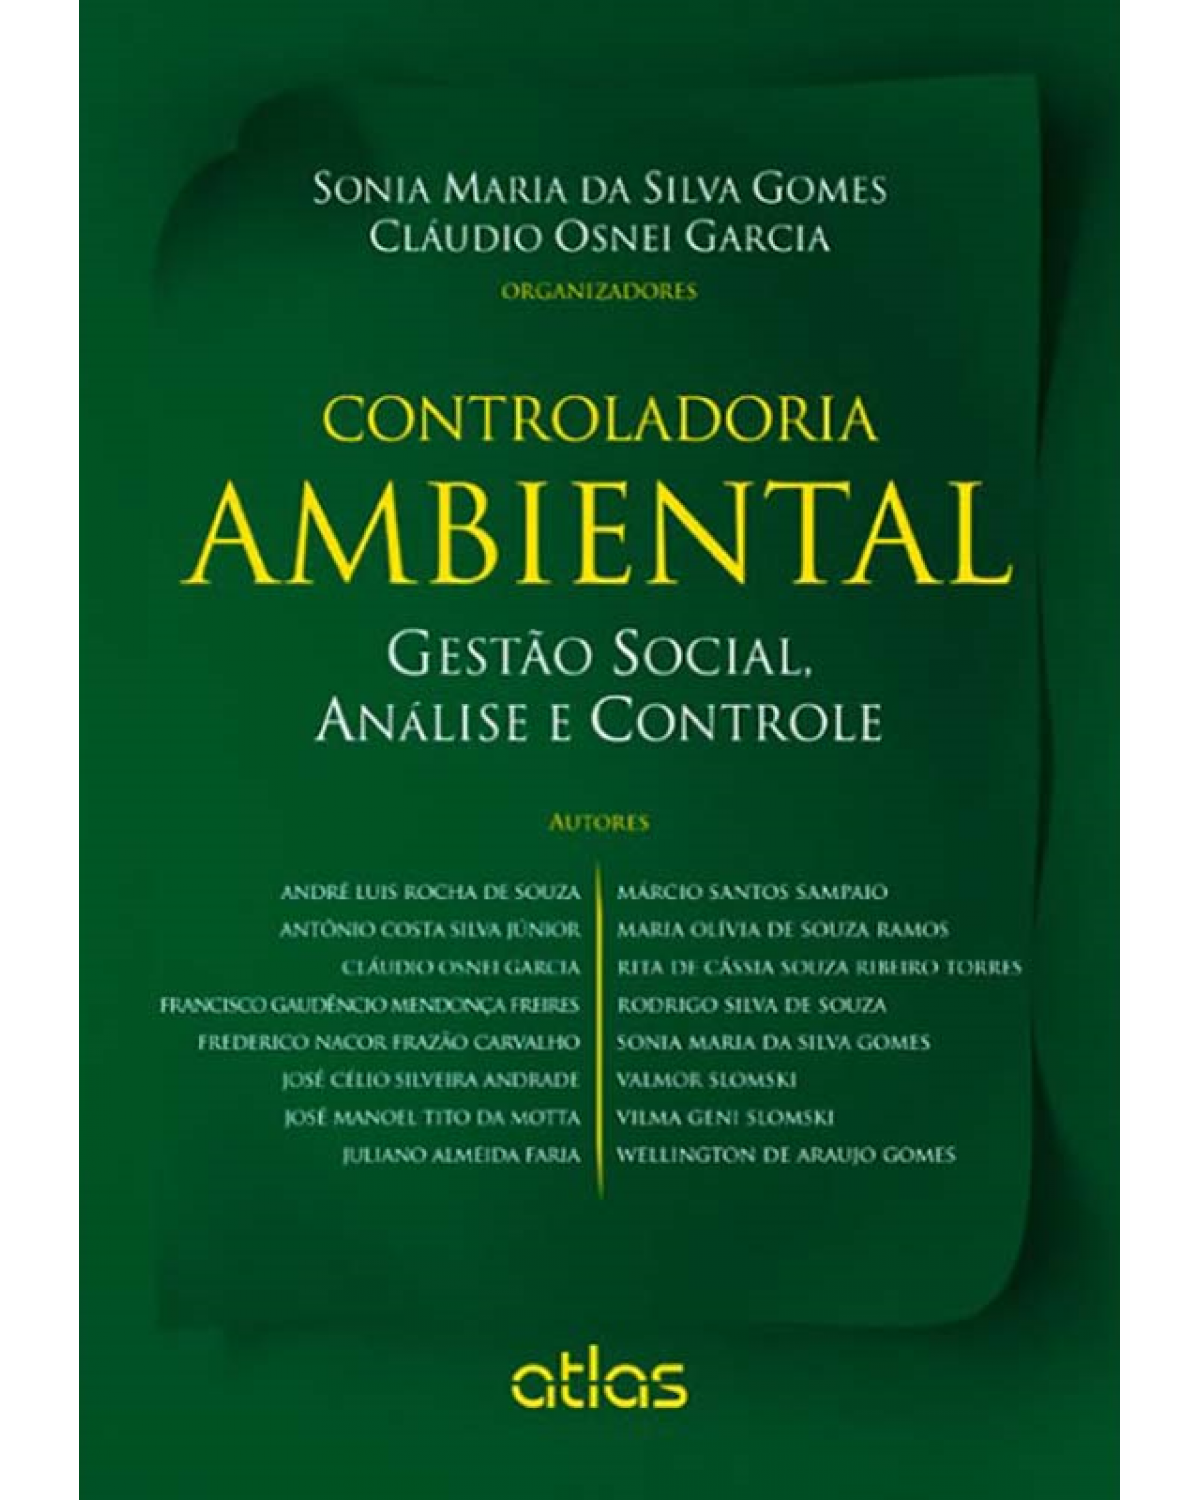 Controladoria ambiental - Gestão social, análise e controle - 1ª Edição | 2013